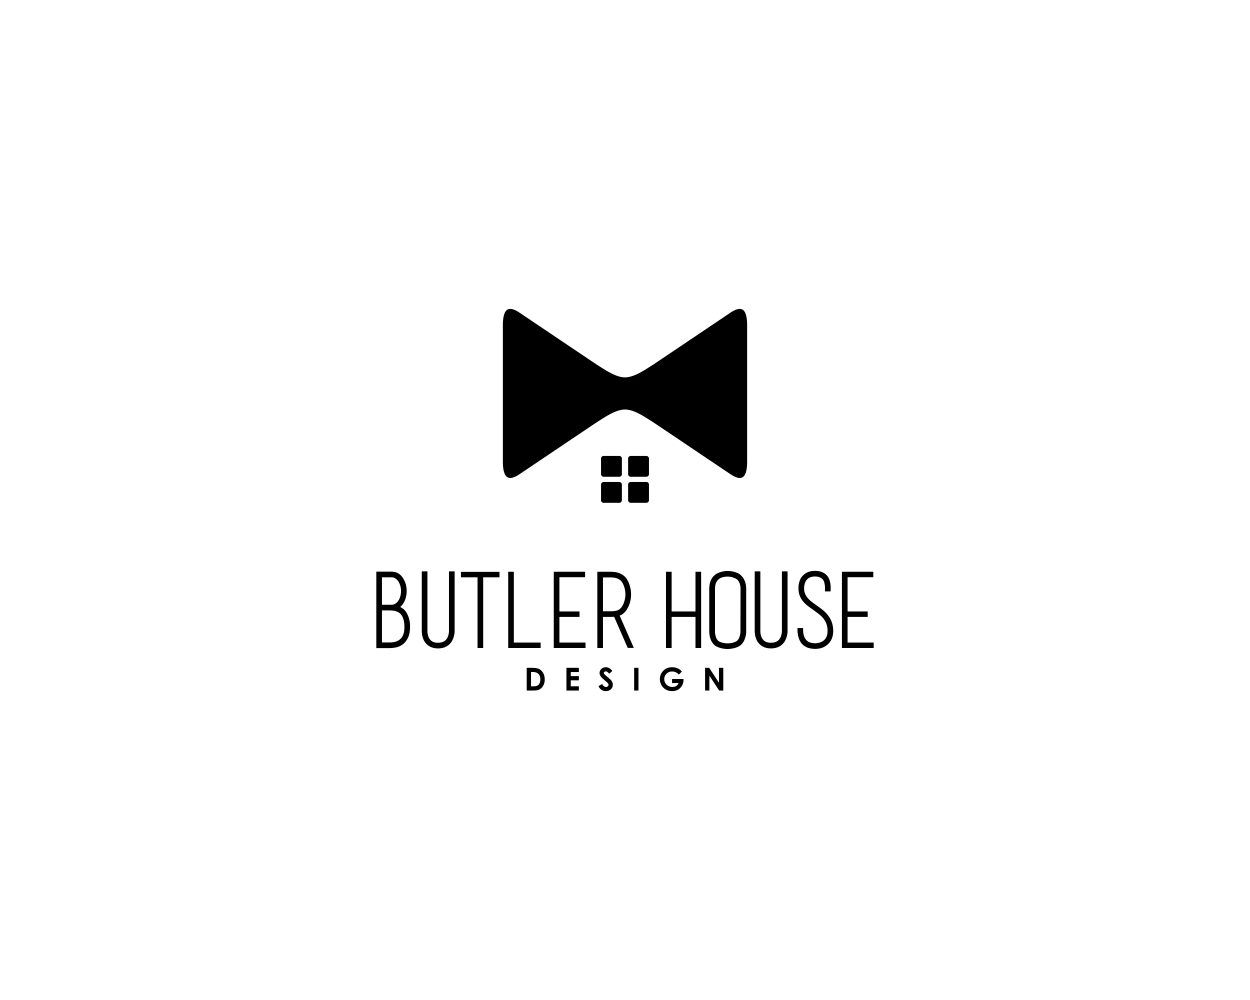 Butler Logo - Business Logo Design for Butler House or Butler House Design